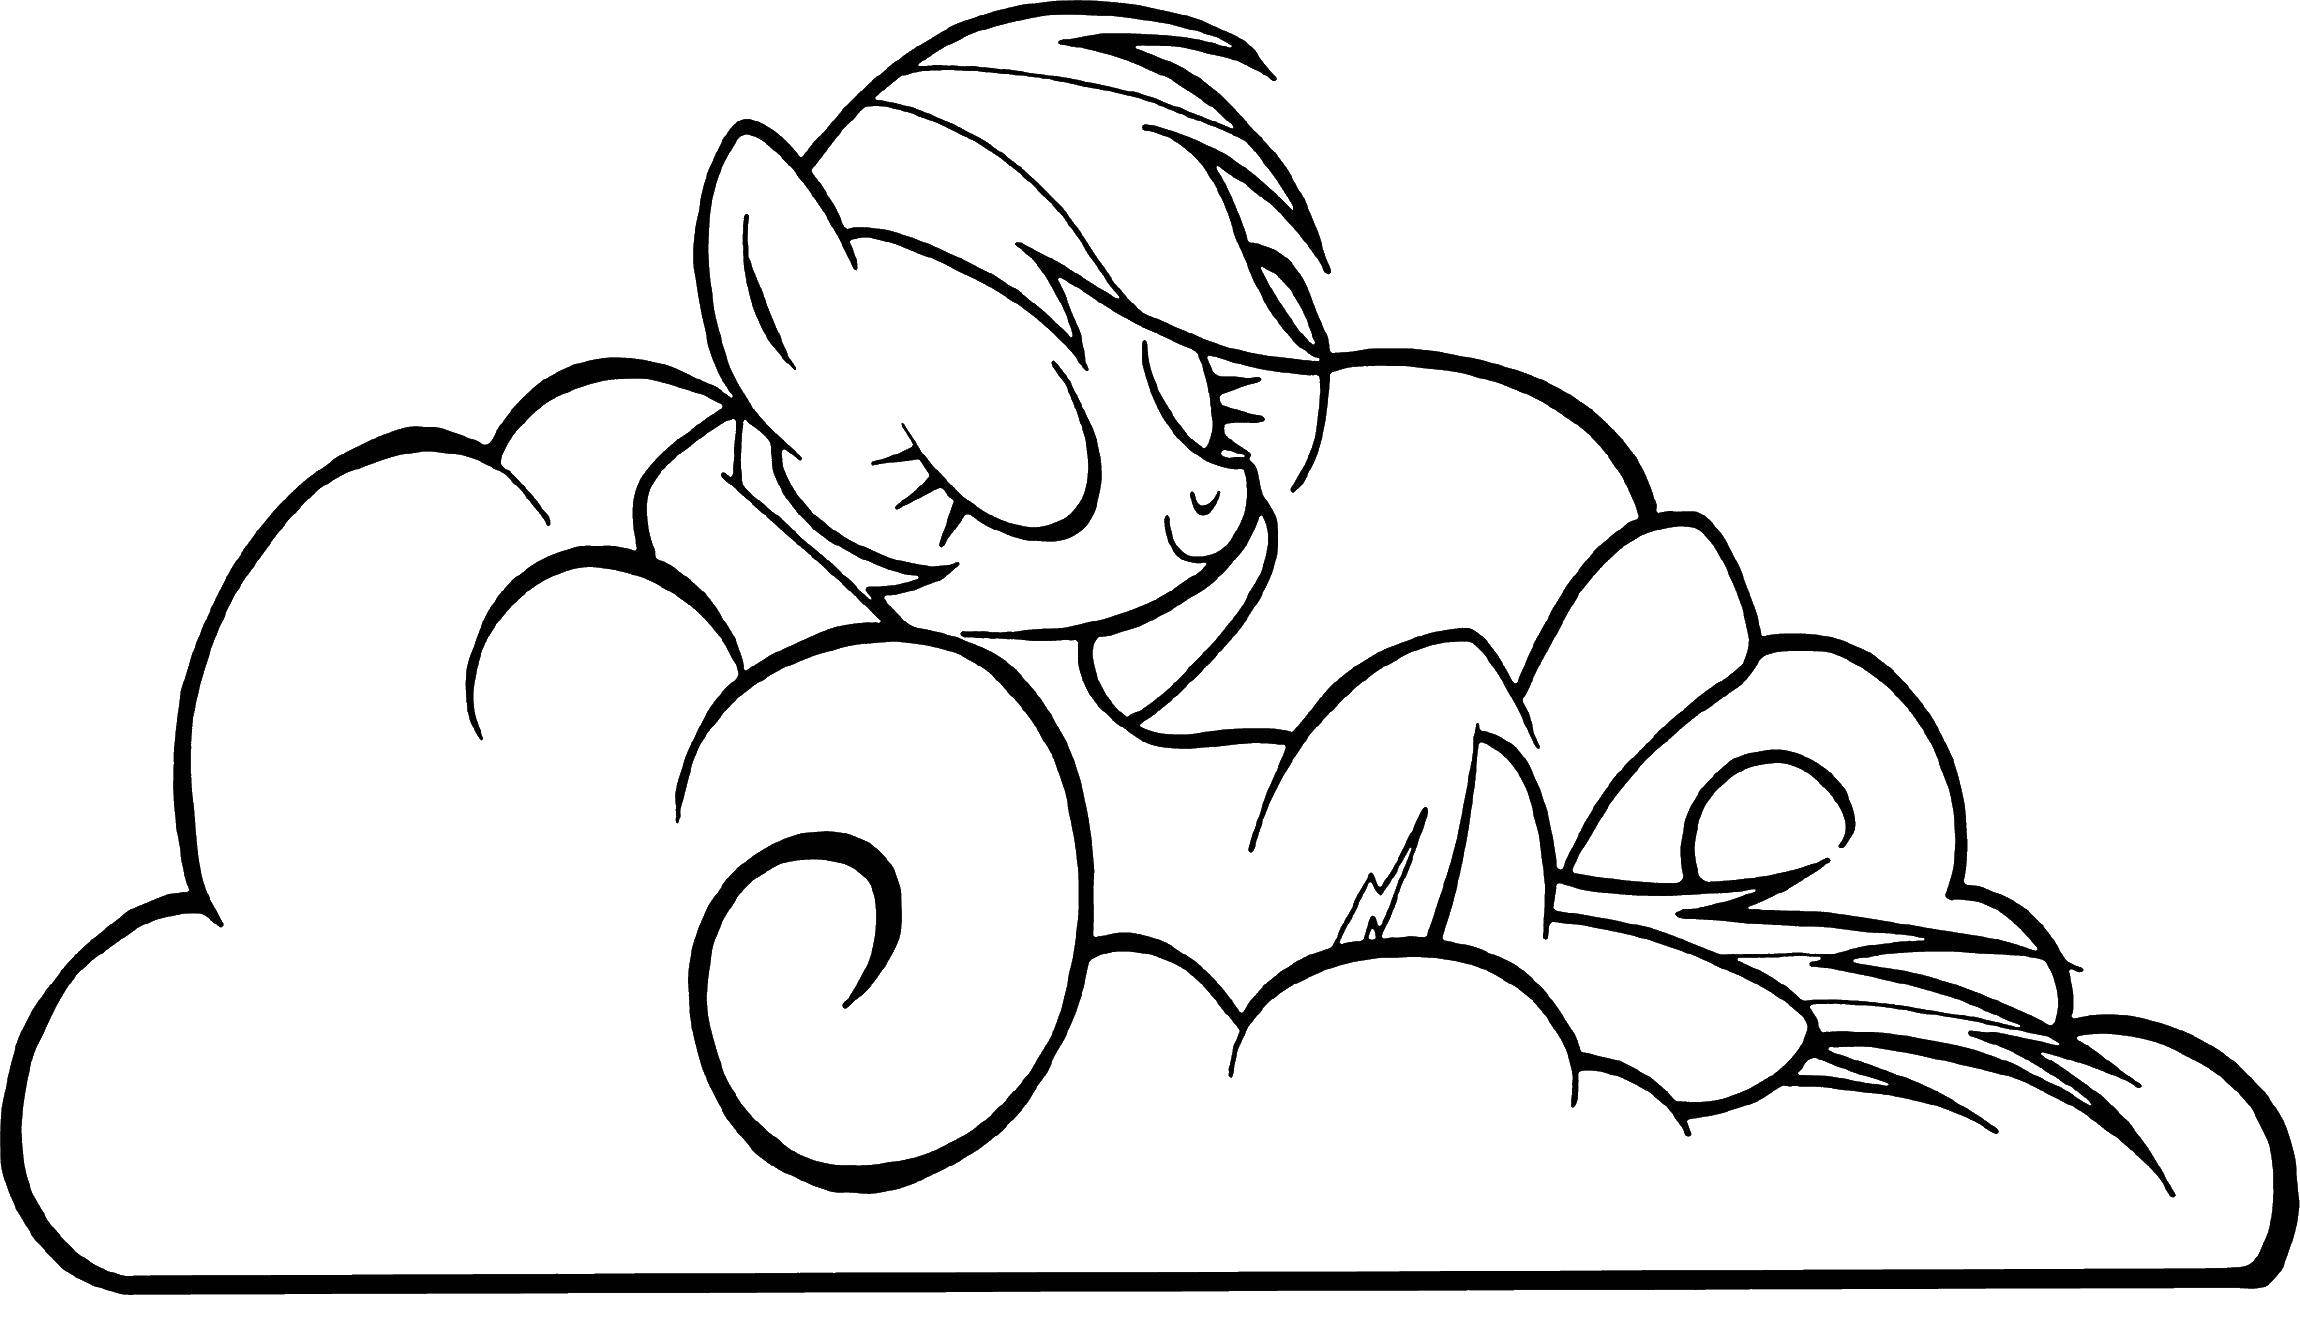 Название: Раскраска Пони из my little pony лежит на облачке. Категория: Пони. Теги: Пони, "My little pony".